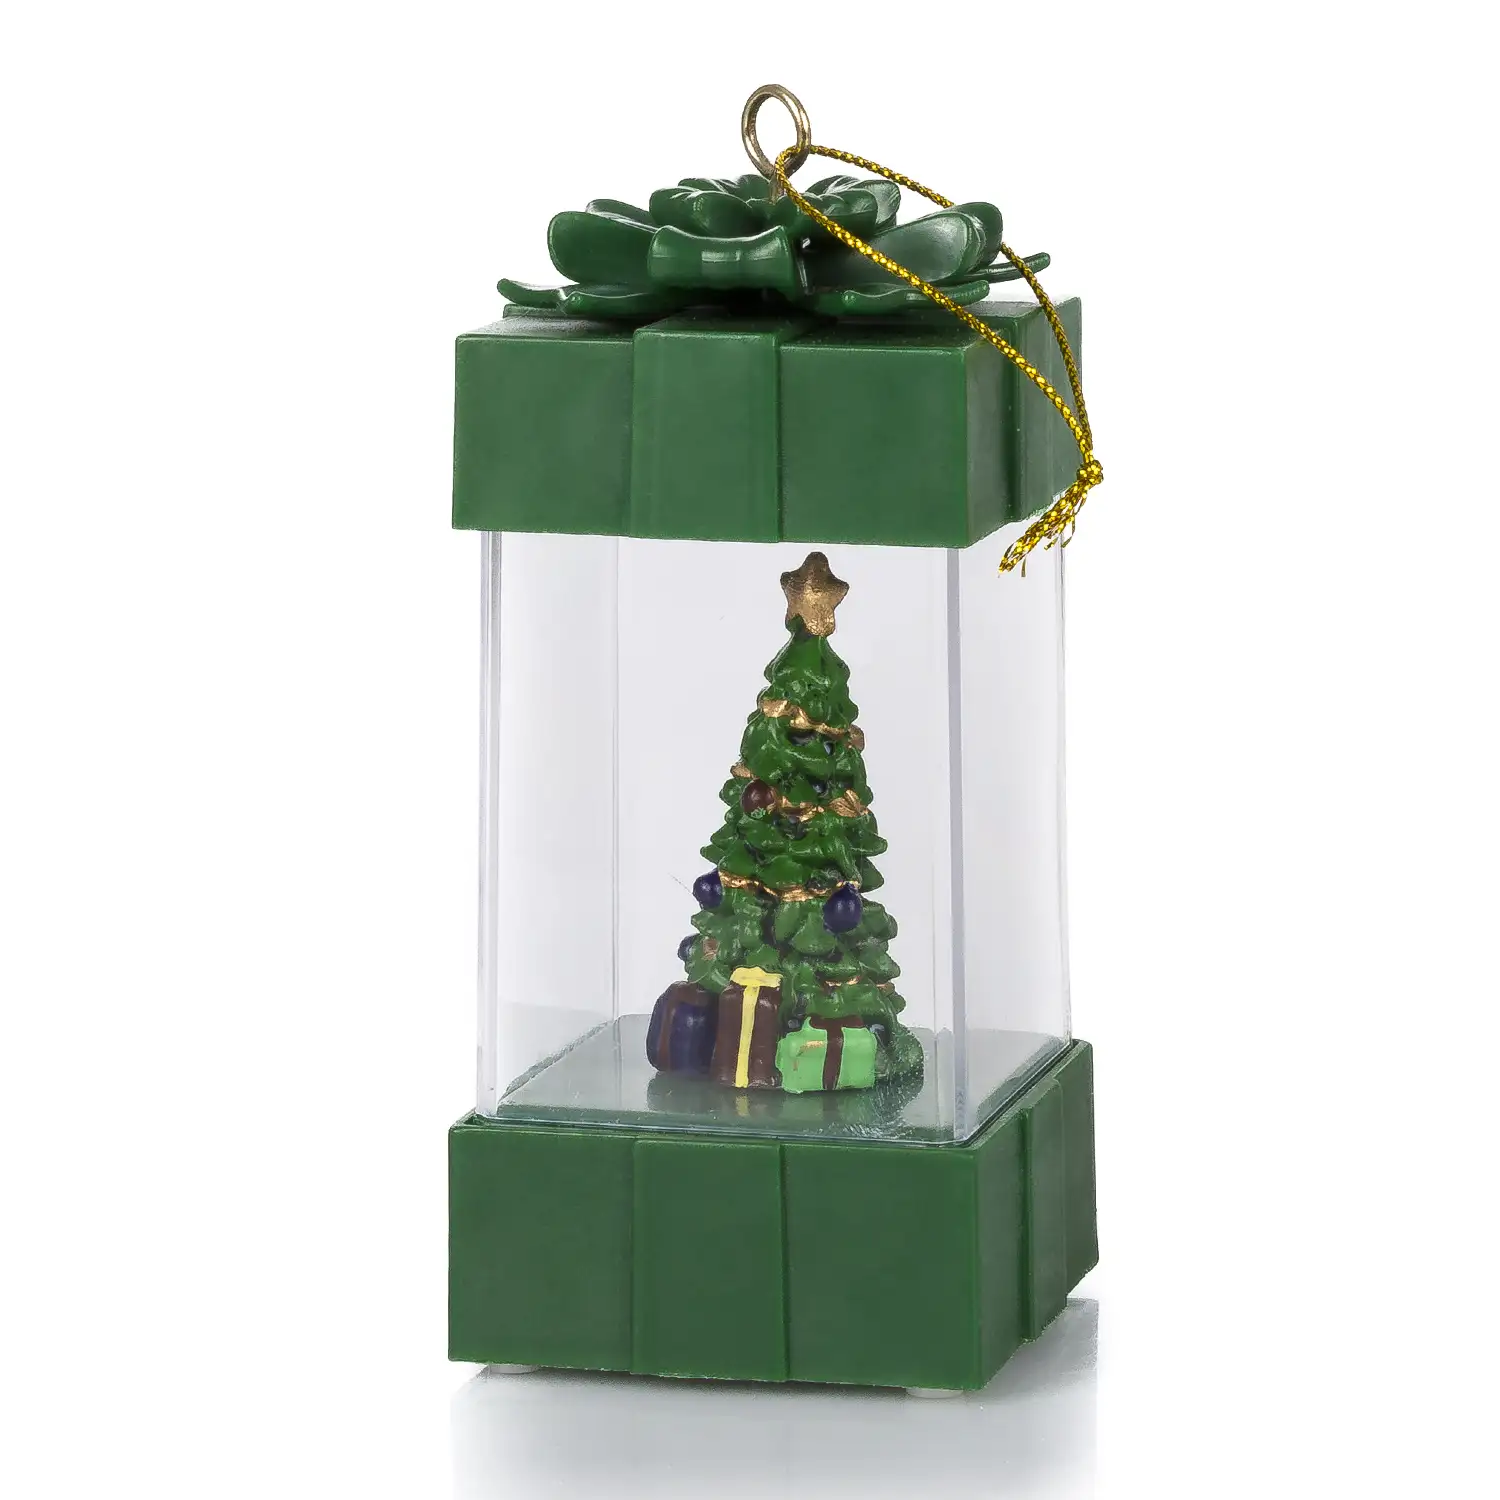 Candil de navidad con luz, diseño regalo con árbol de navidad.